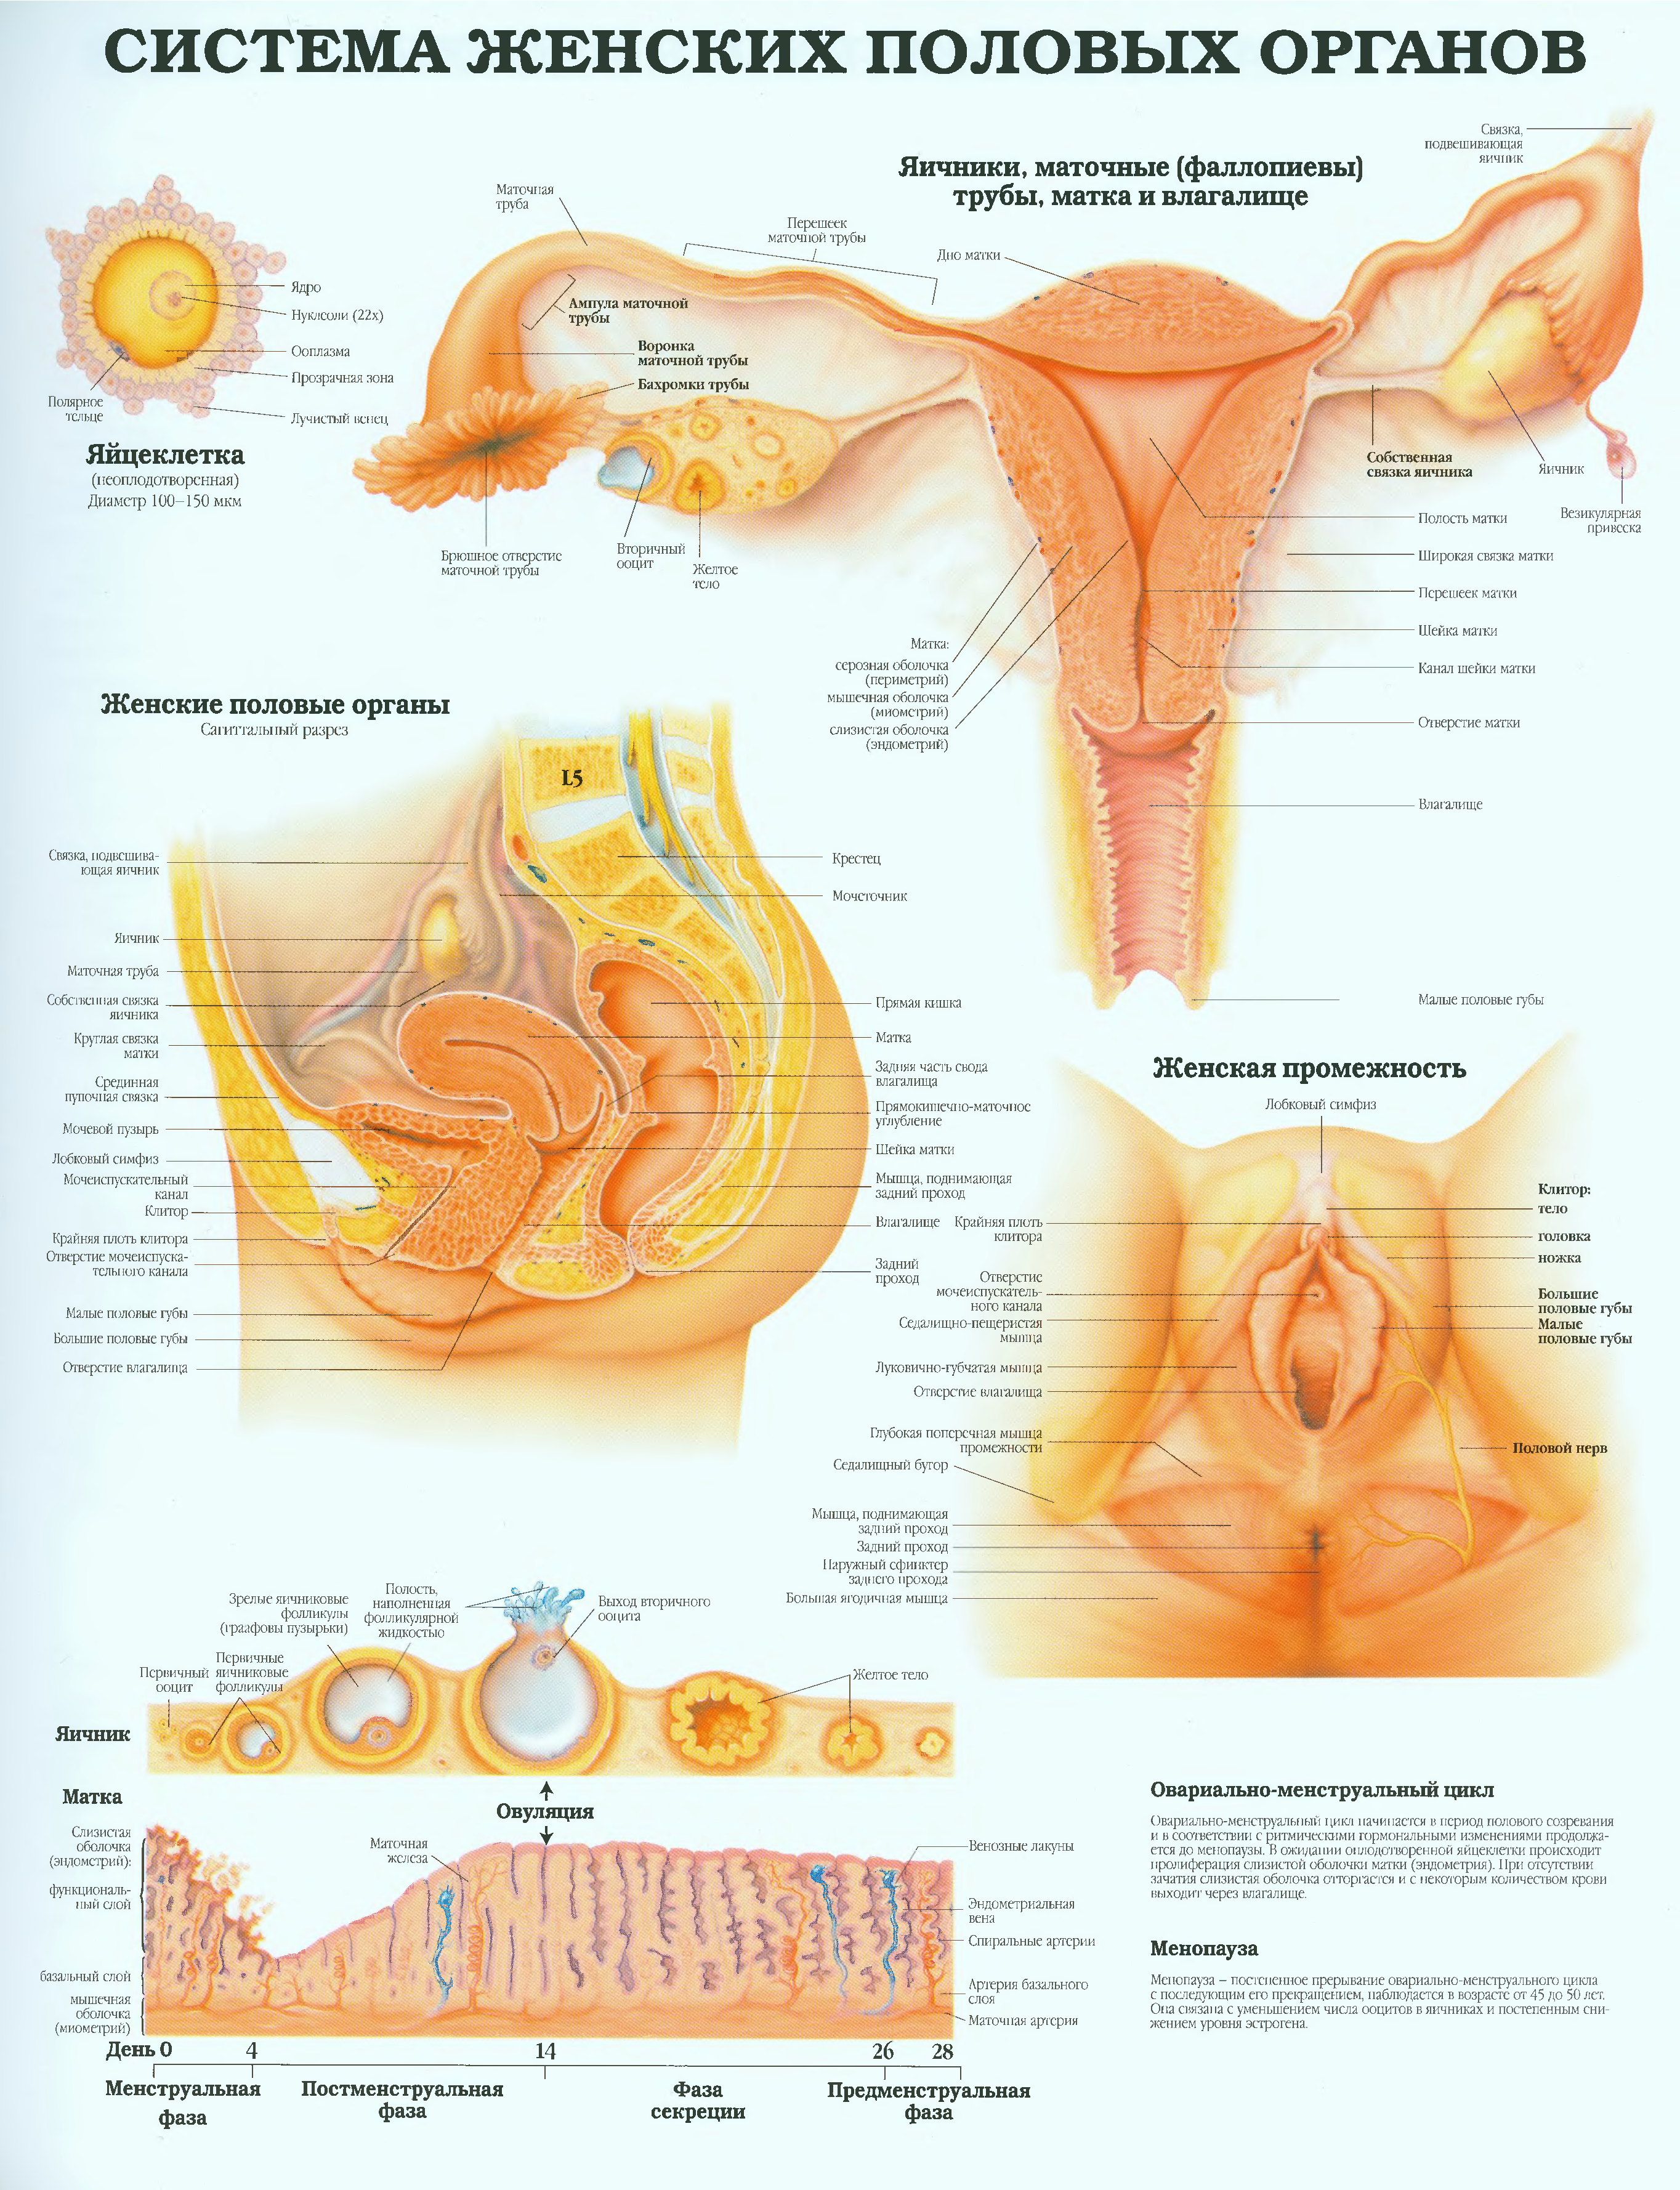 мочеполовая система женщины строение и функции фото